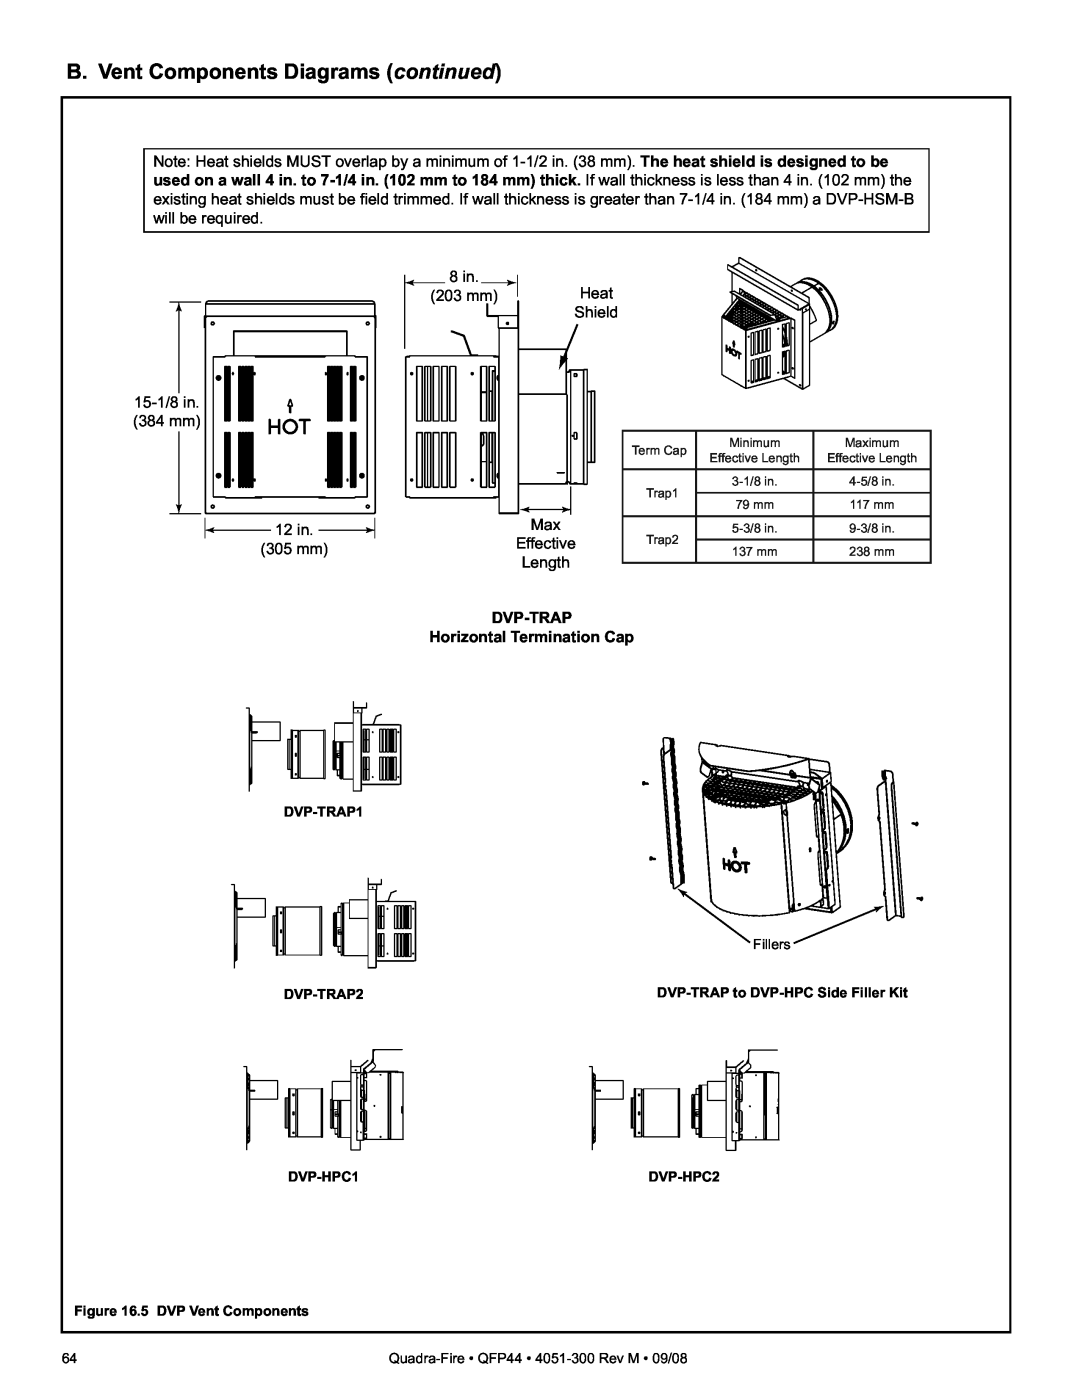 Quadra-Fire QFP44 owner manual B. Vent Components Diagrams continued, Effective, DVP-TRAP Horizontal Termination Cap 